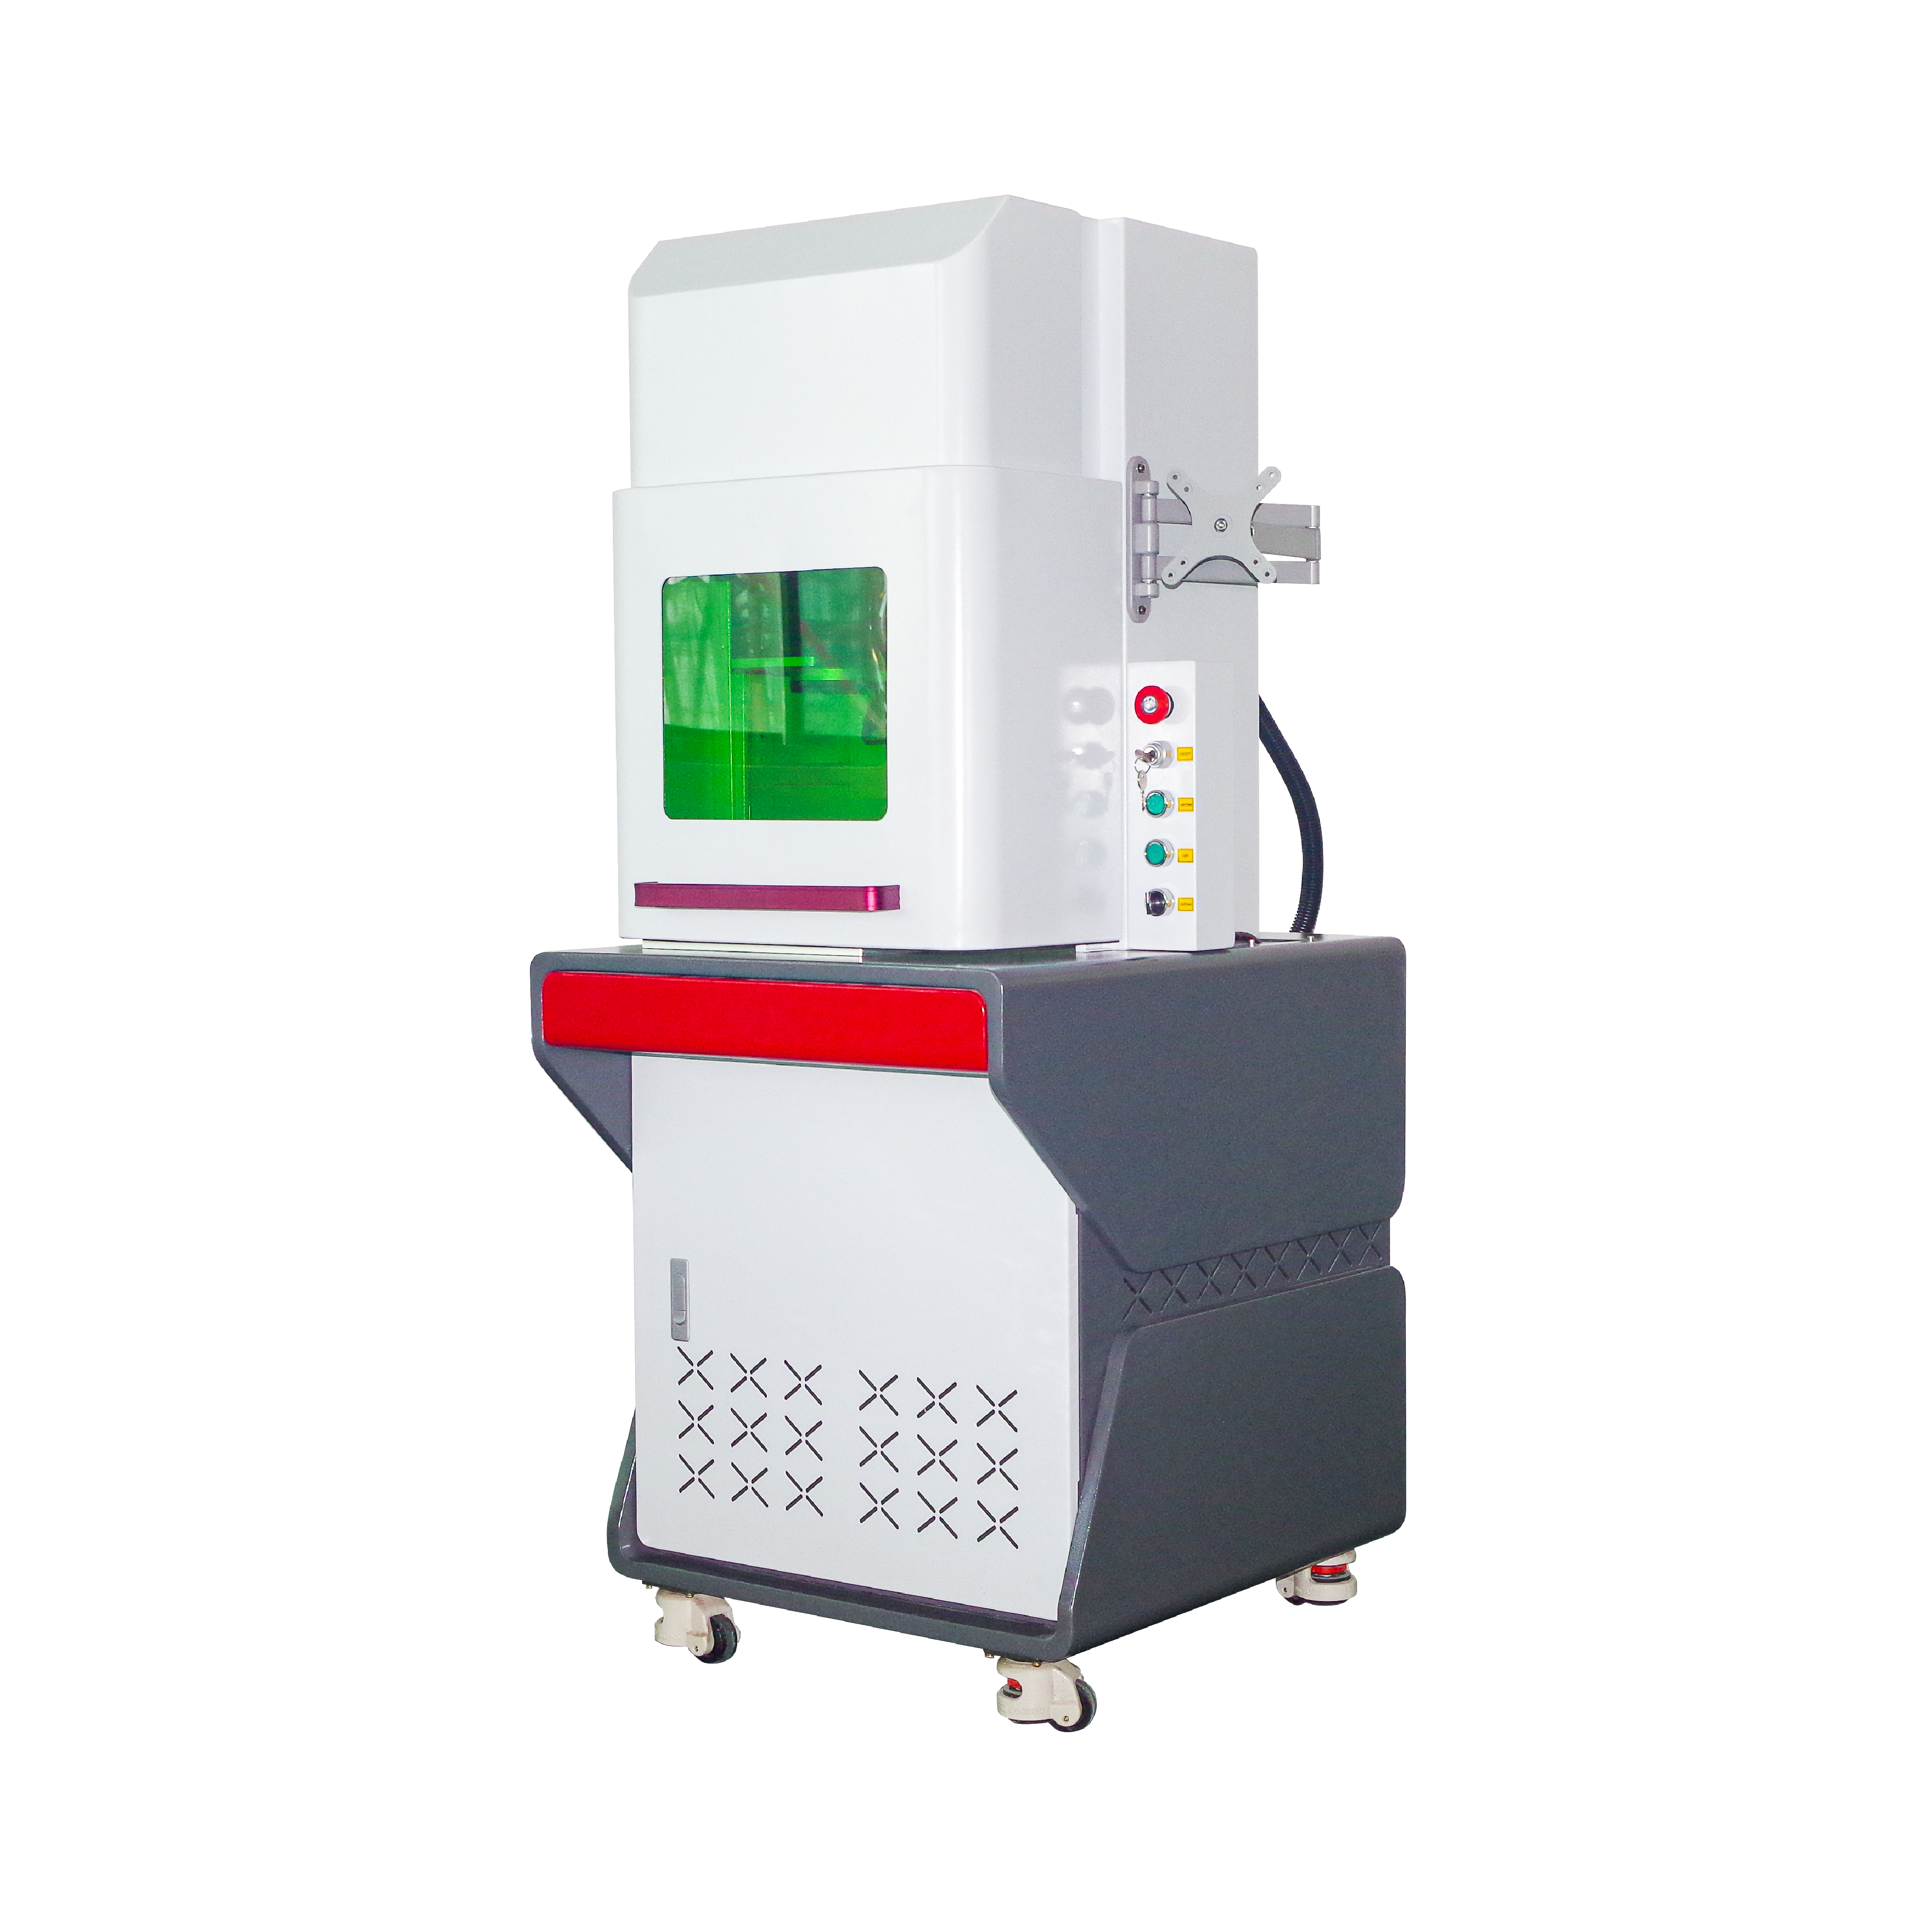 Enclosed 30W 35W 60W โลหะหลอด CO2 เลเซอร์แกะสลักเครื่อง DAVI Laser Marker สำหรับพลาสติกอะคริลิคกระดาษหนังผลิตภัณฑ์ไม้